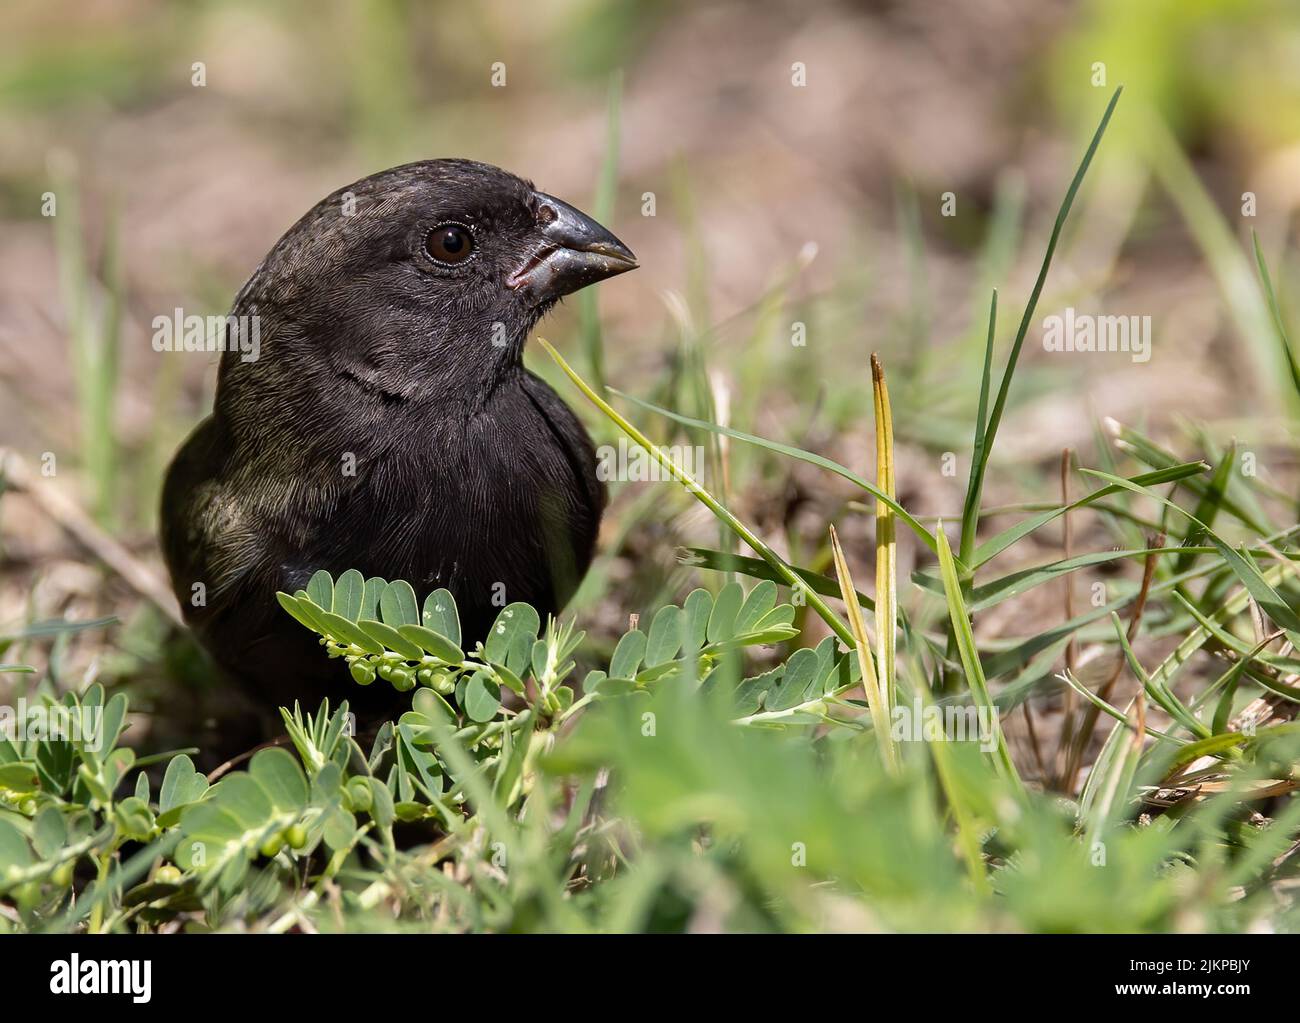 Un primer plano de un pájaro negro gritando sentado sobre hierbas verdes a la luz del día con fondo borroso Foto de stock